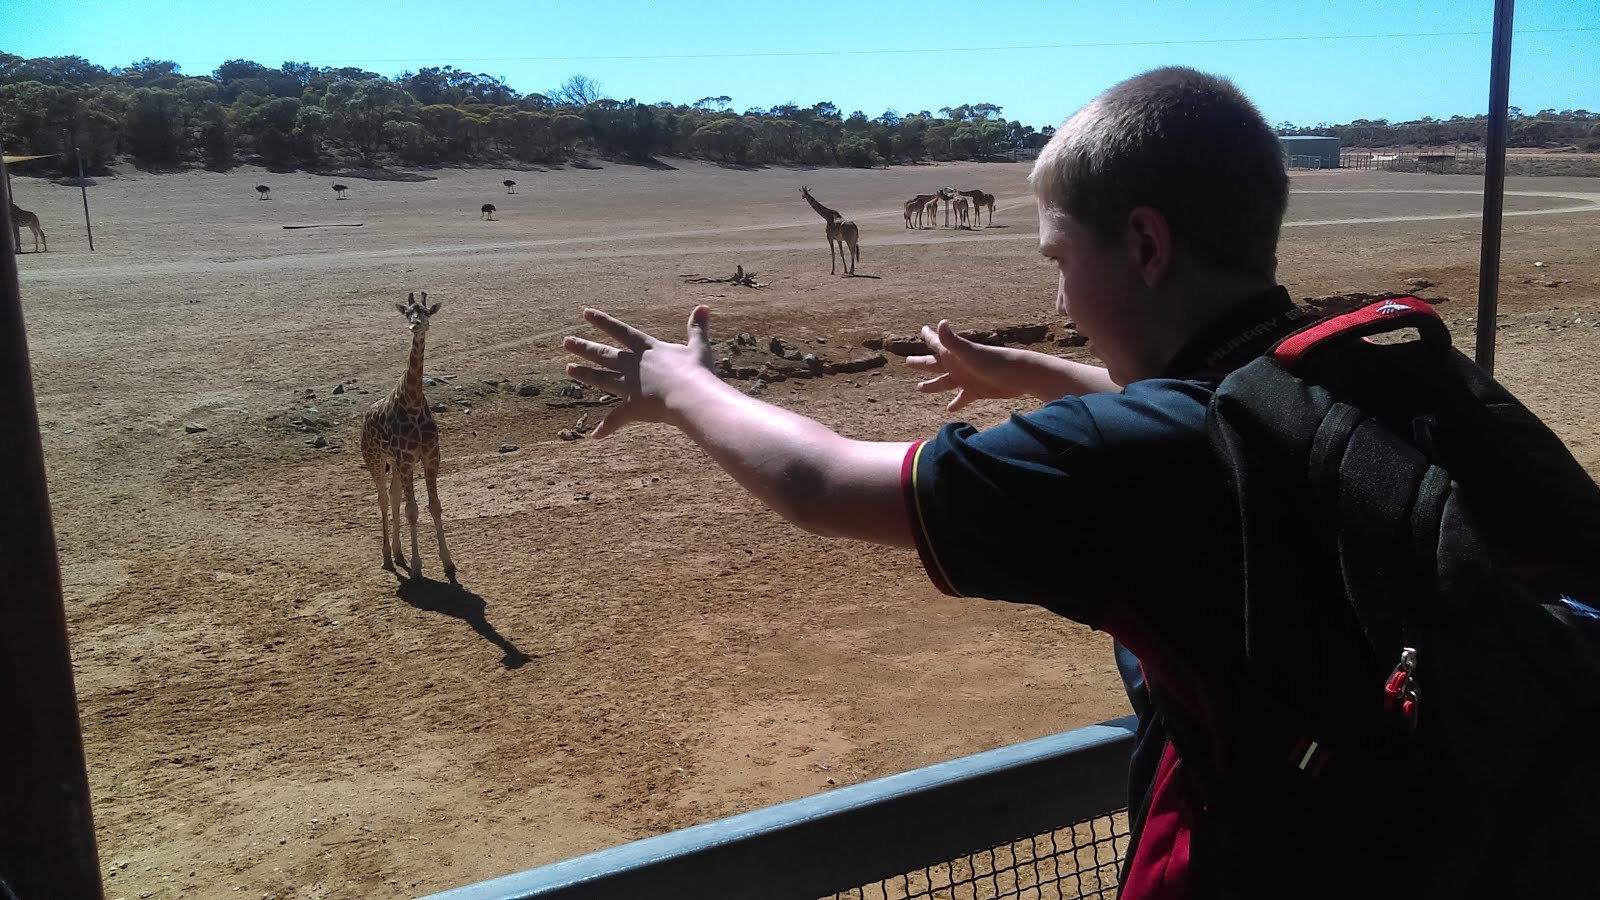 We like feeding the giraffes at the Zoo.